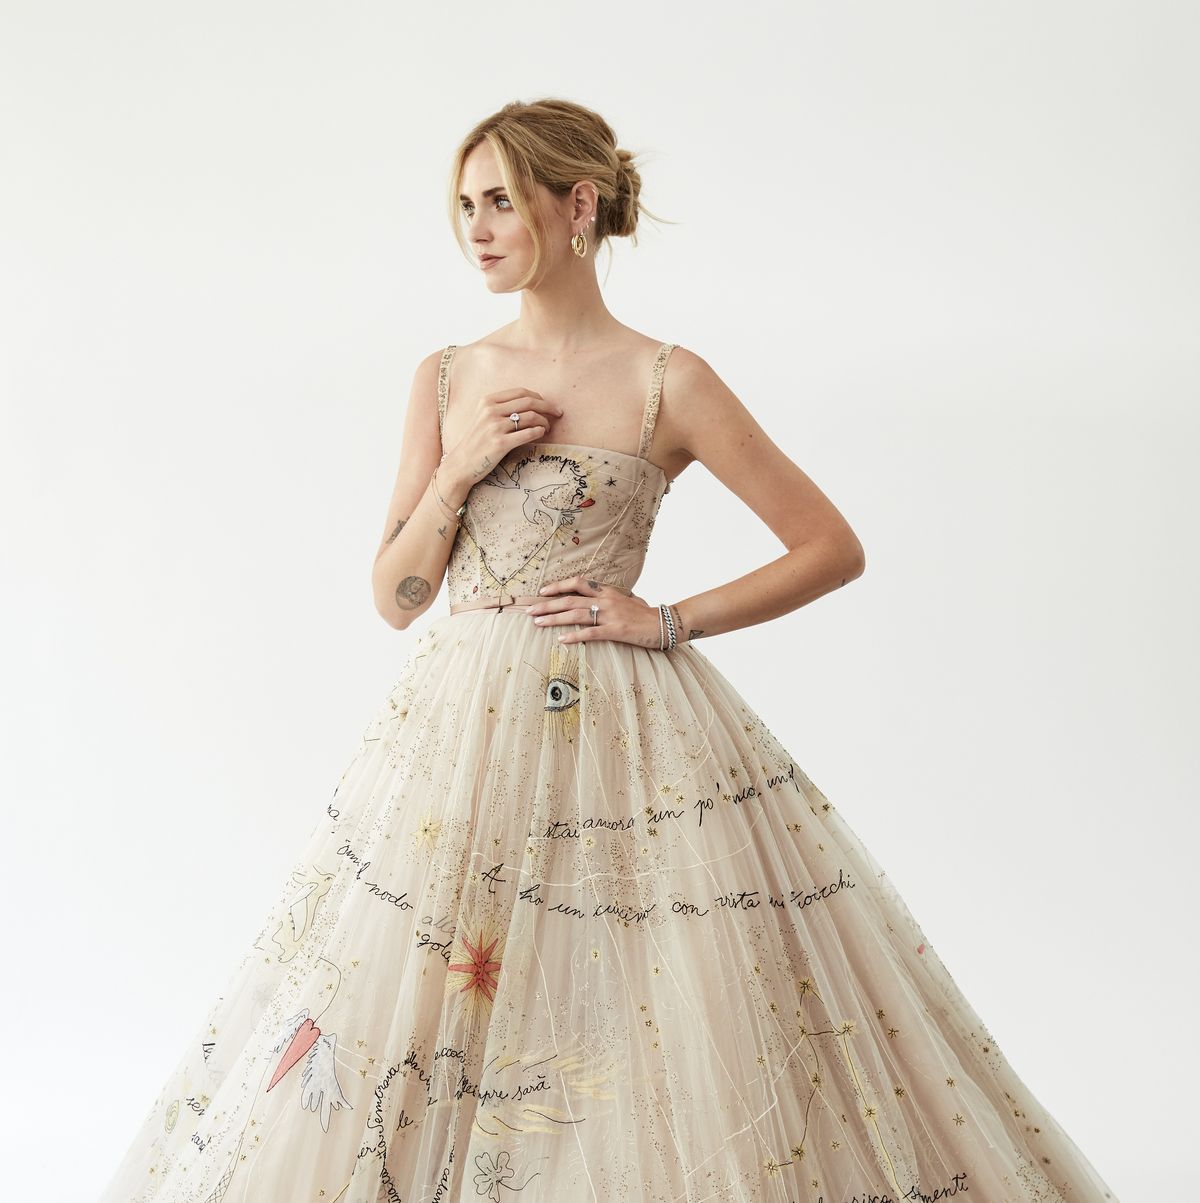 Chiara Ferrangni's 3 Dior Couture Wedding Dresses Took 1,600 Hours